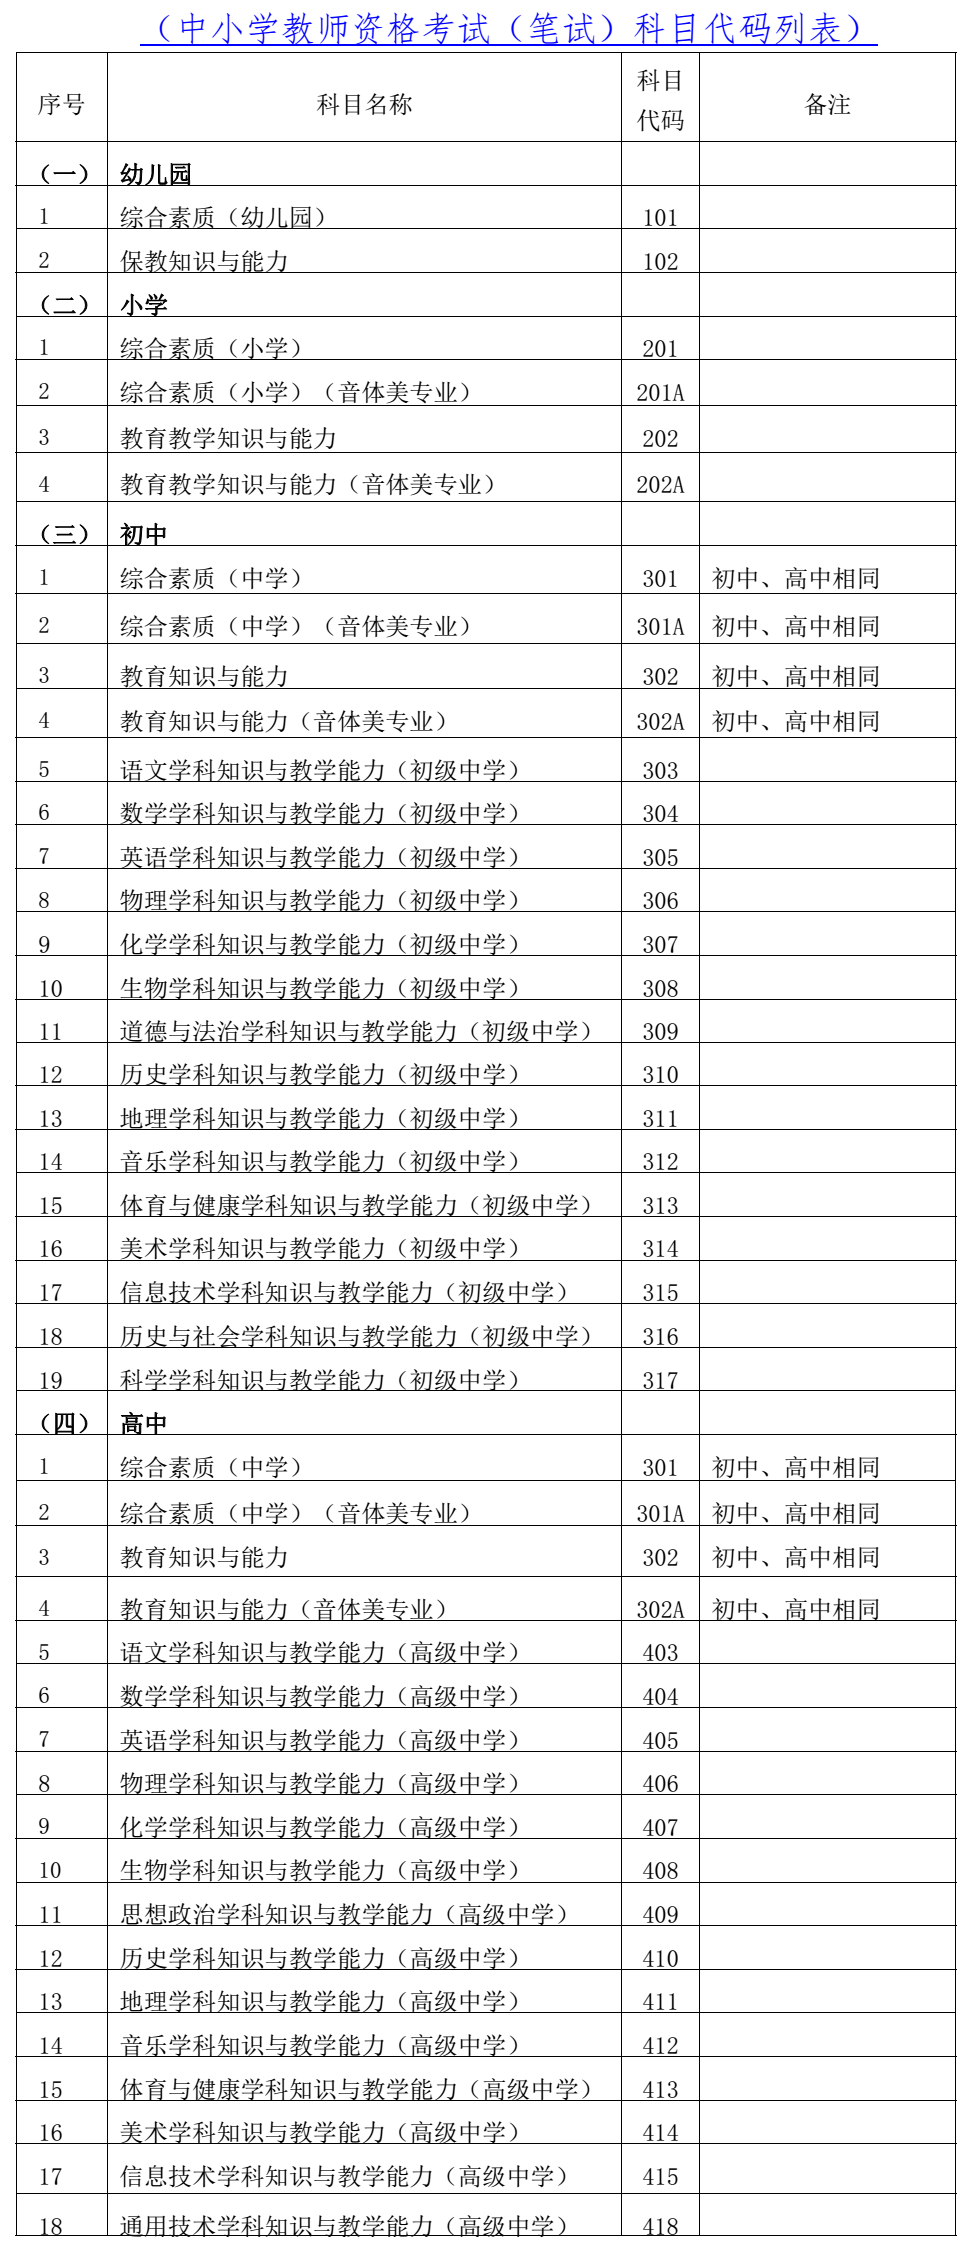 海南省2021年下半年教师资格考试笔试报名通知